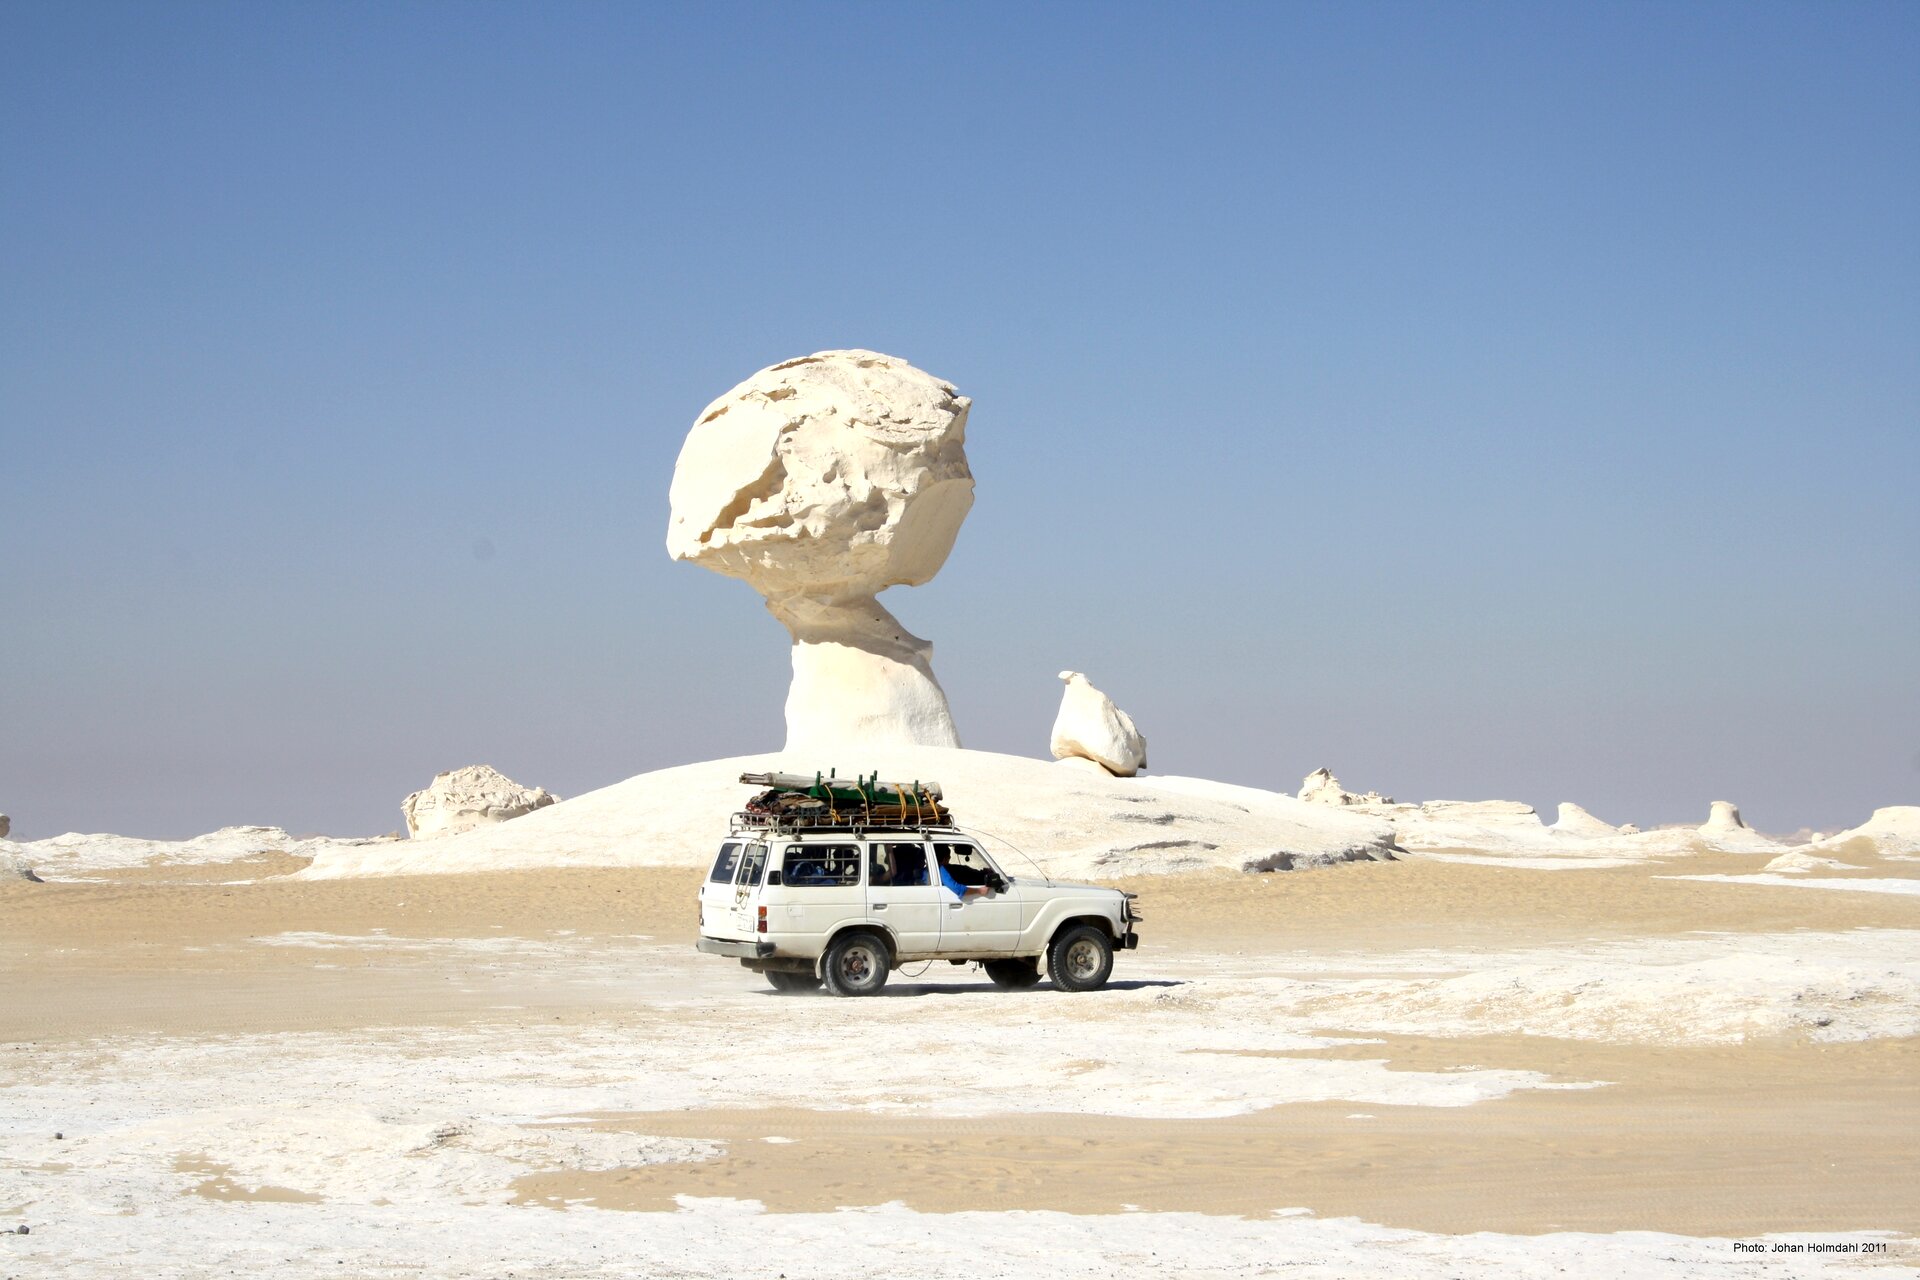 Na zdjęciu grzyb skalny na pustyni. Podstawa ma kształt walca, na jego czubku jest kula. Bardzo jasny kolor piasku. Na pierwszym planie płaski teren pustynny. Biały samochód terenowy, trzy razy mniejszy od grzyba.